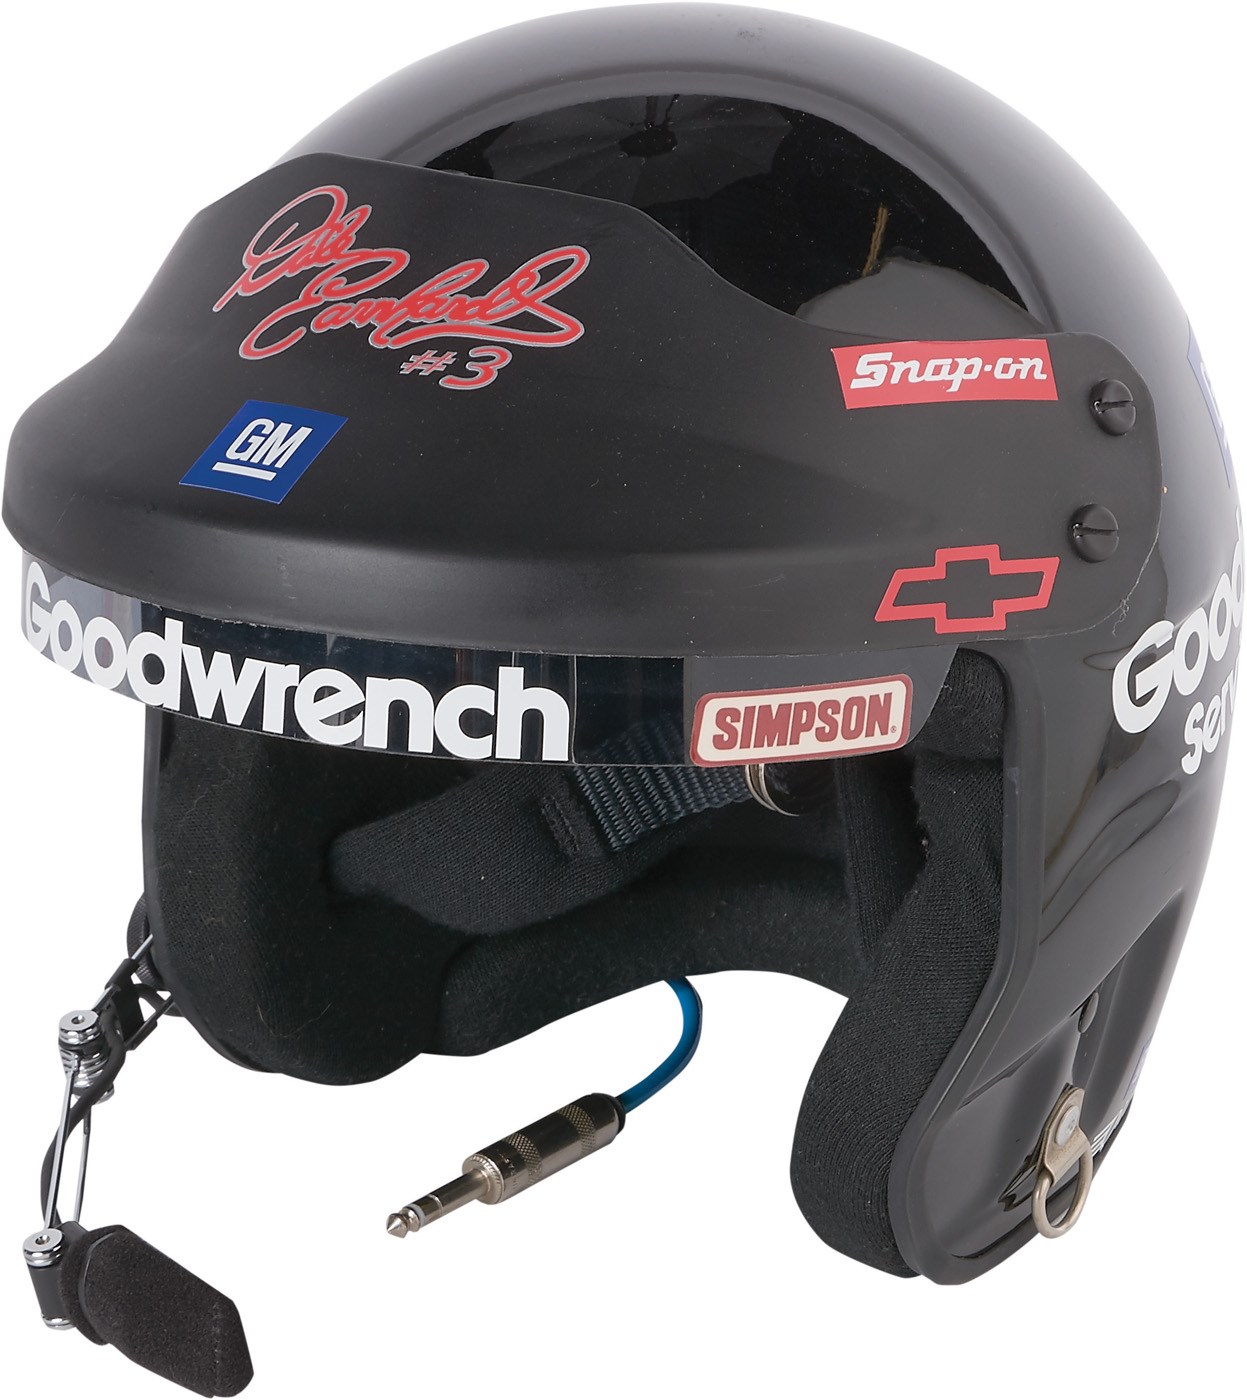 - 1998 Dale Earnhardt Sr. Race Worn Helmet w/Signed Goggles (Earnhardt LOA)